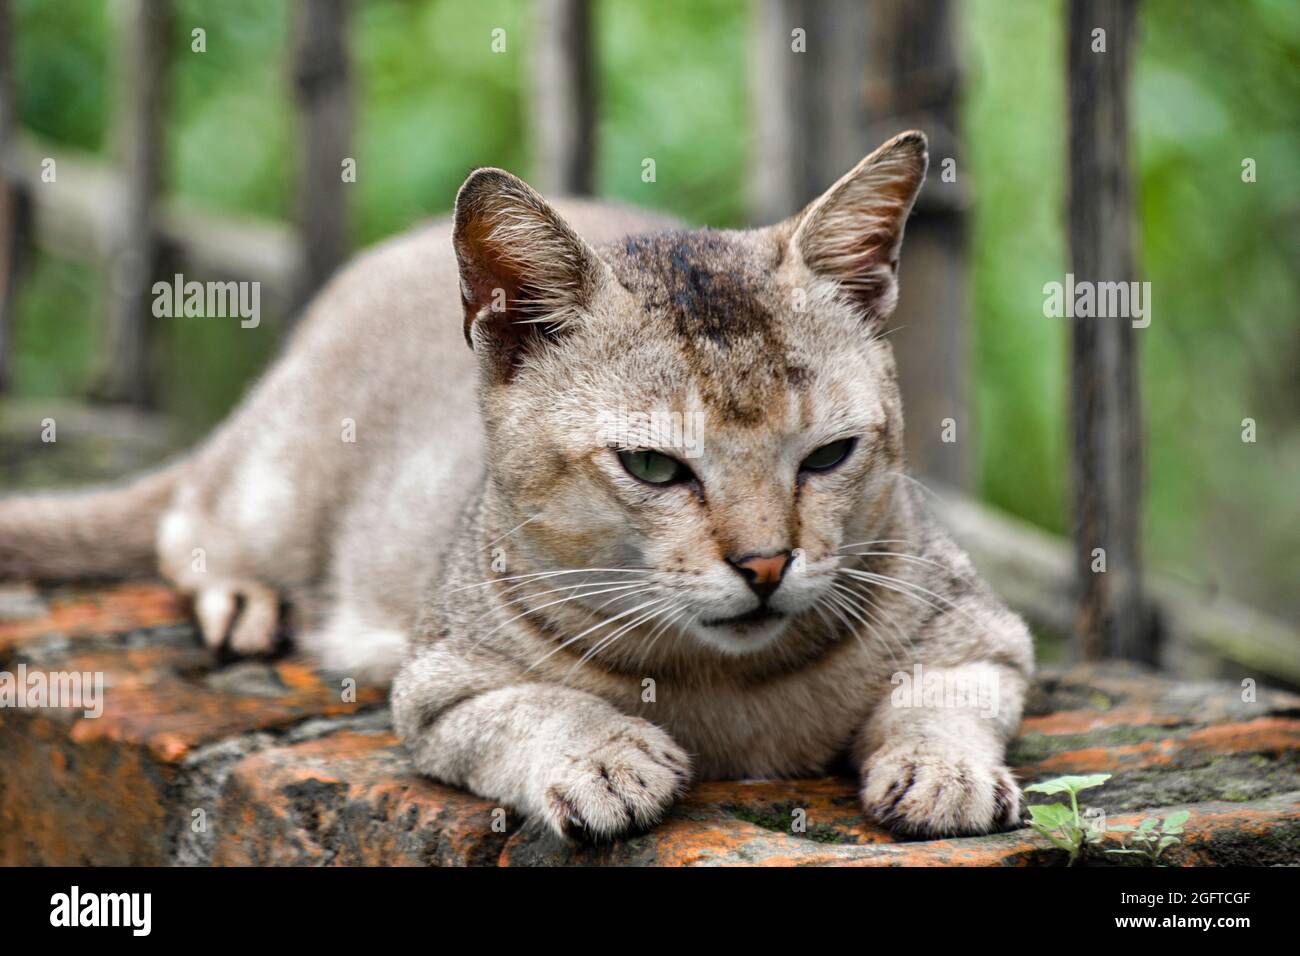 Positions de veille du chat. Felis catus est une espèce domestique de petit mammifère carnivore. Banque D'Images